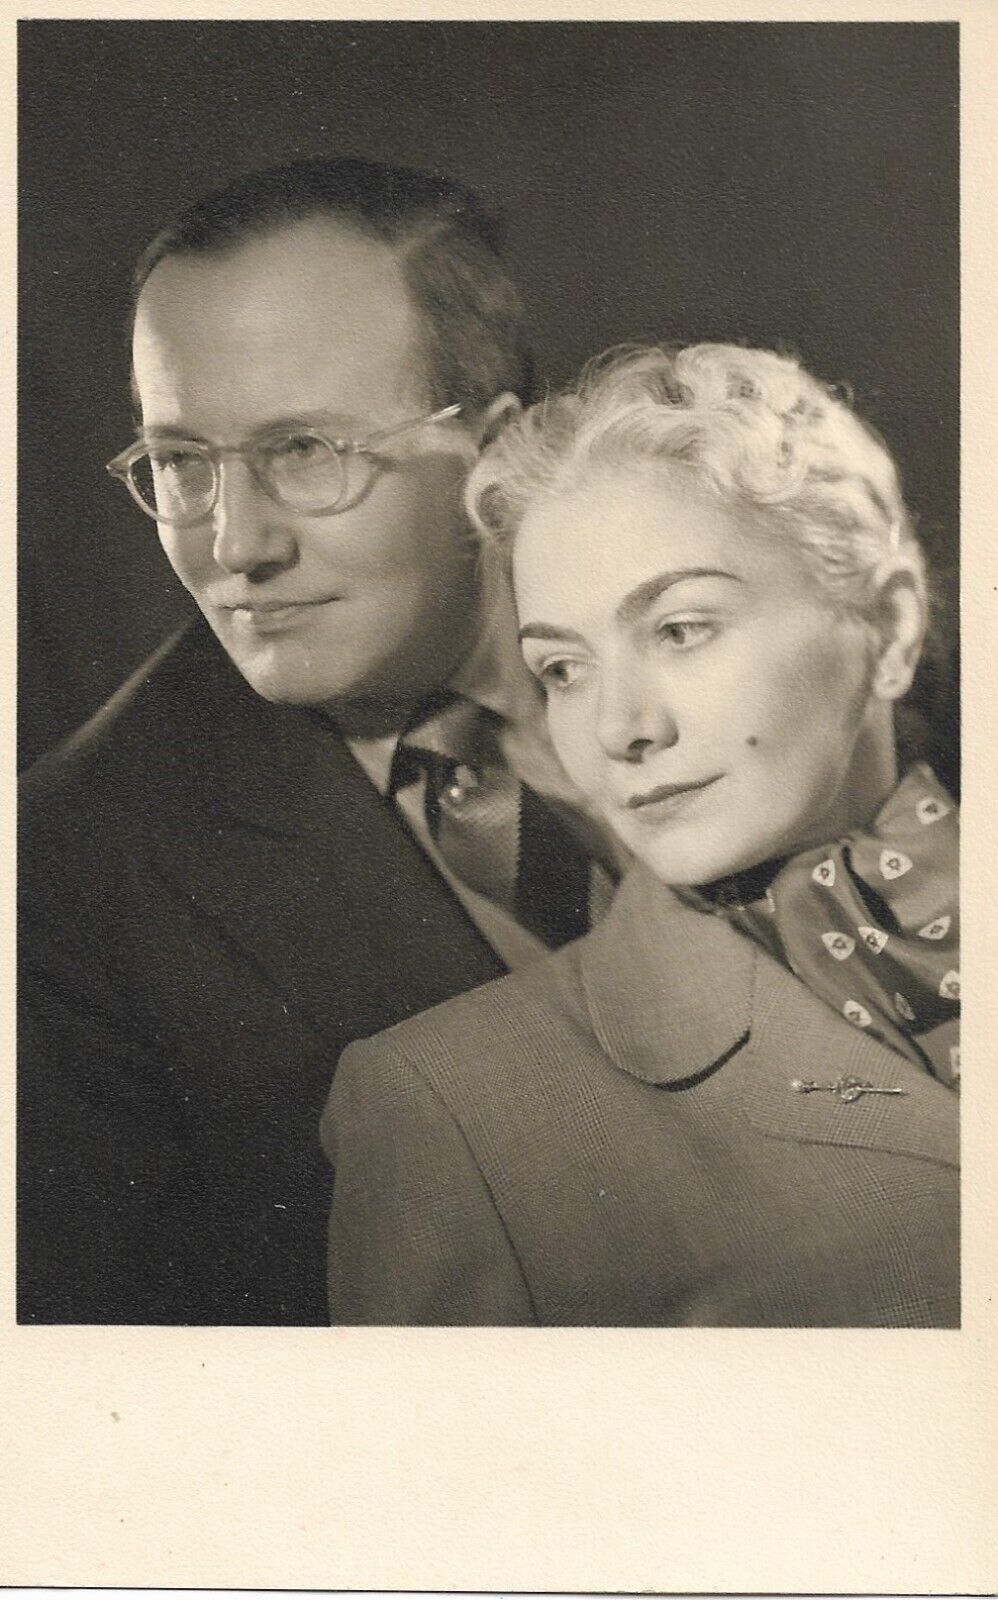 Couple Real Photo Postcard 1930s RPPC Studio Vintage Fashion Suit Dress